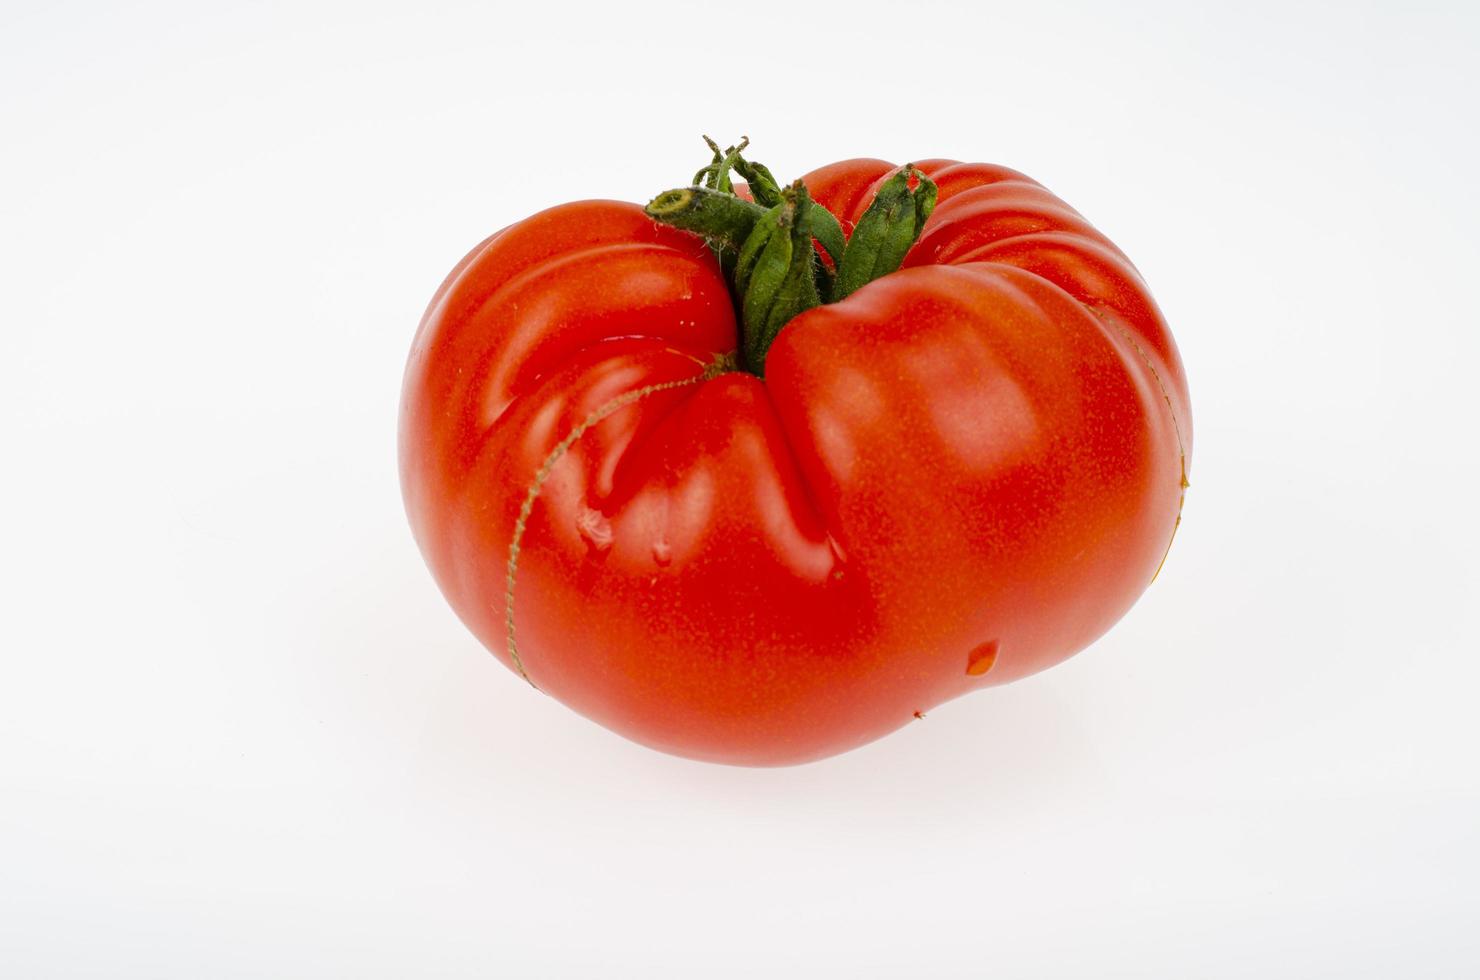 único tomate maduro de carne vermelha isolado no fundo branco. foto de estúdio